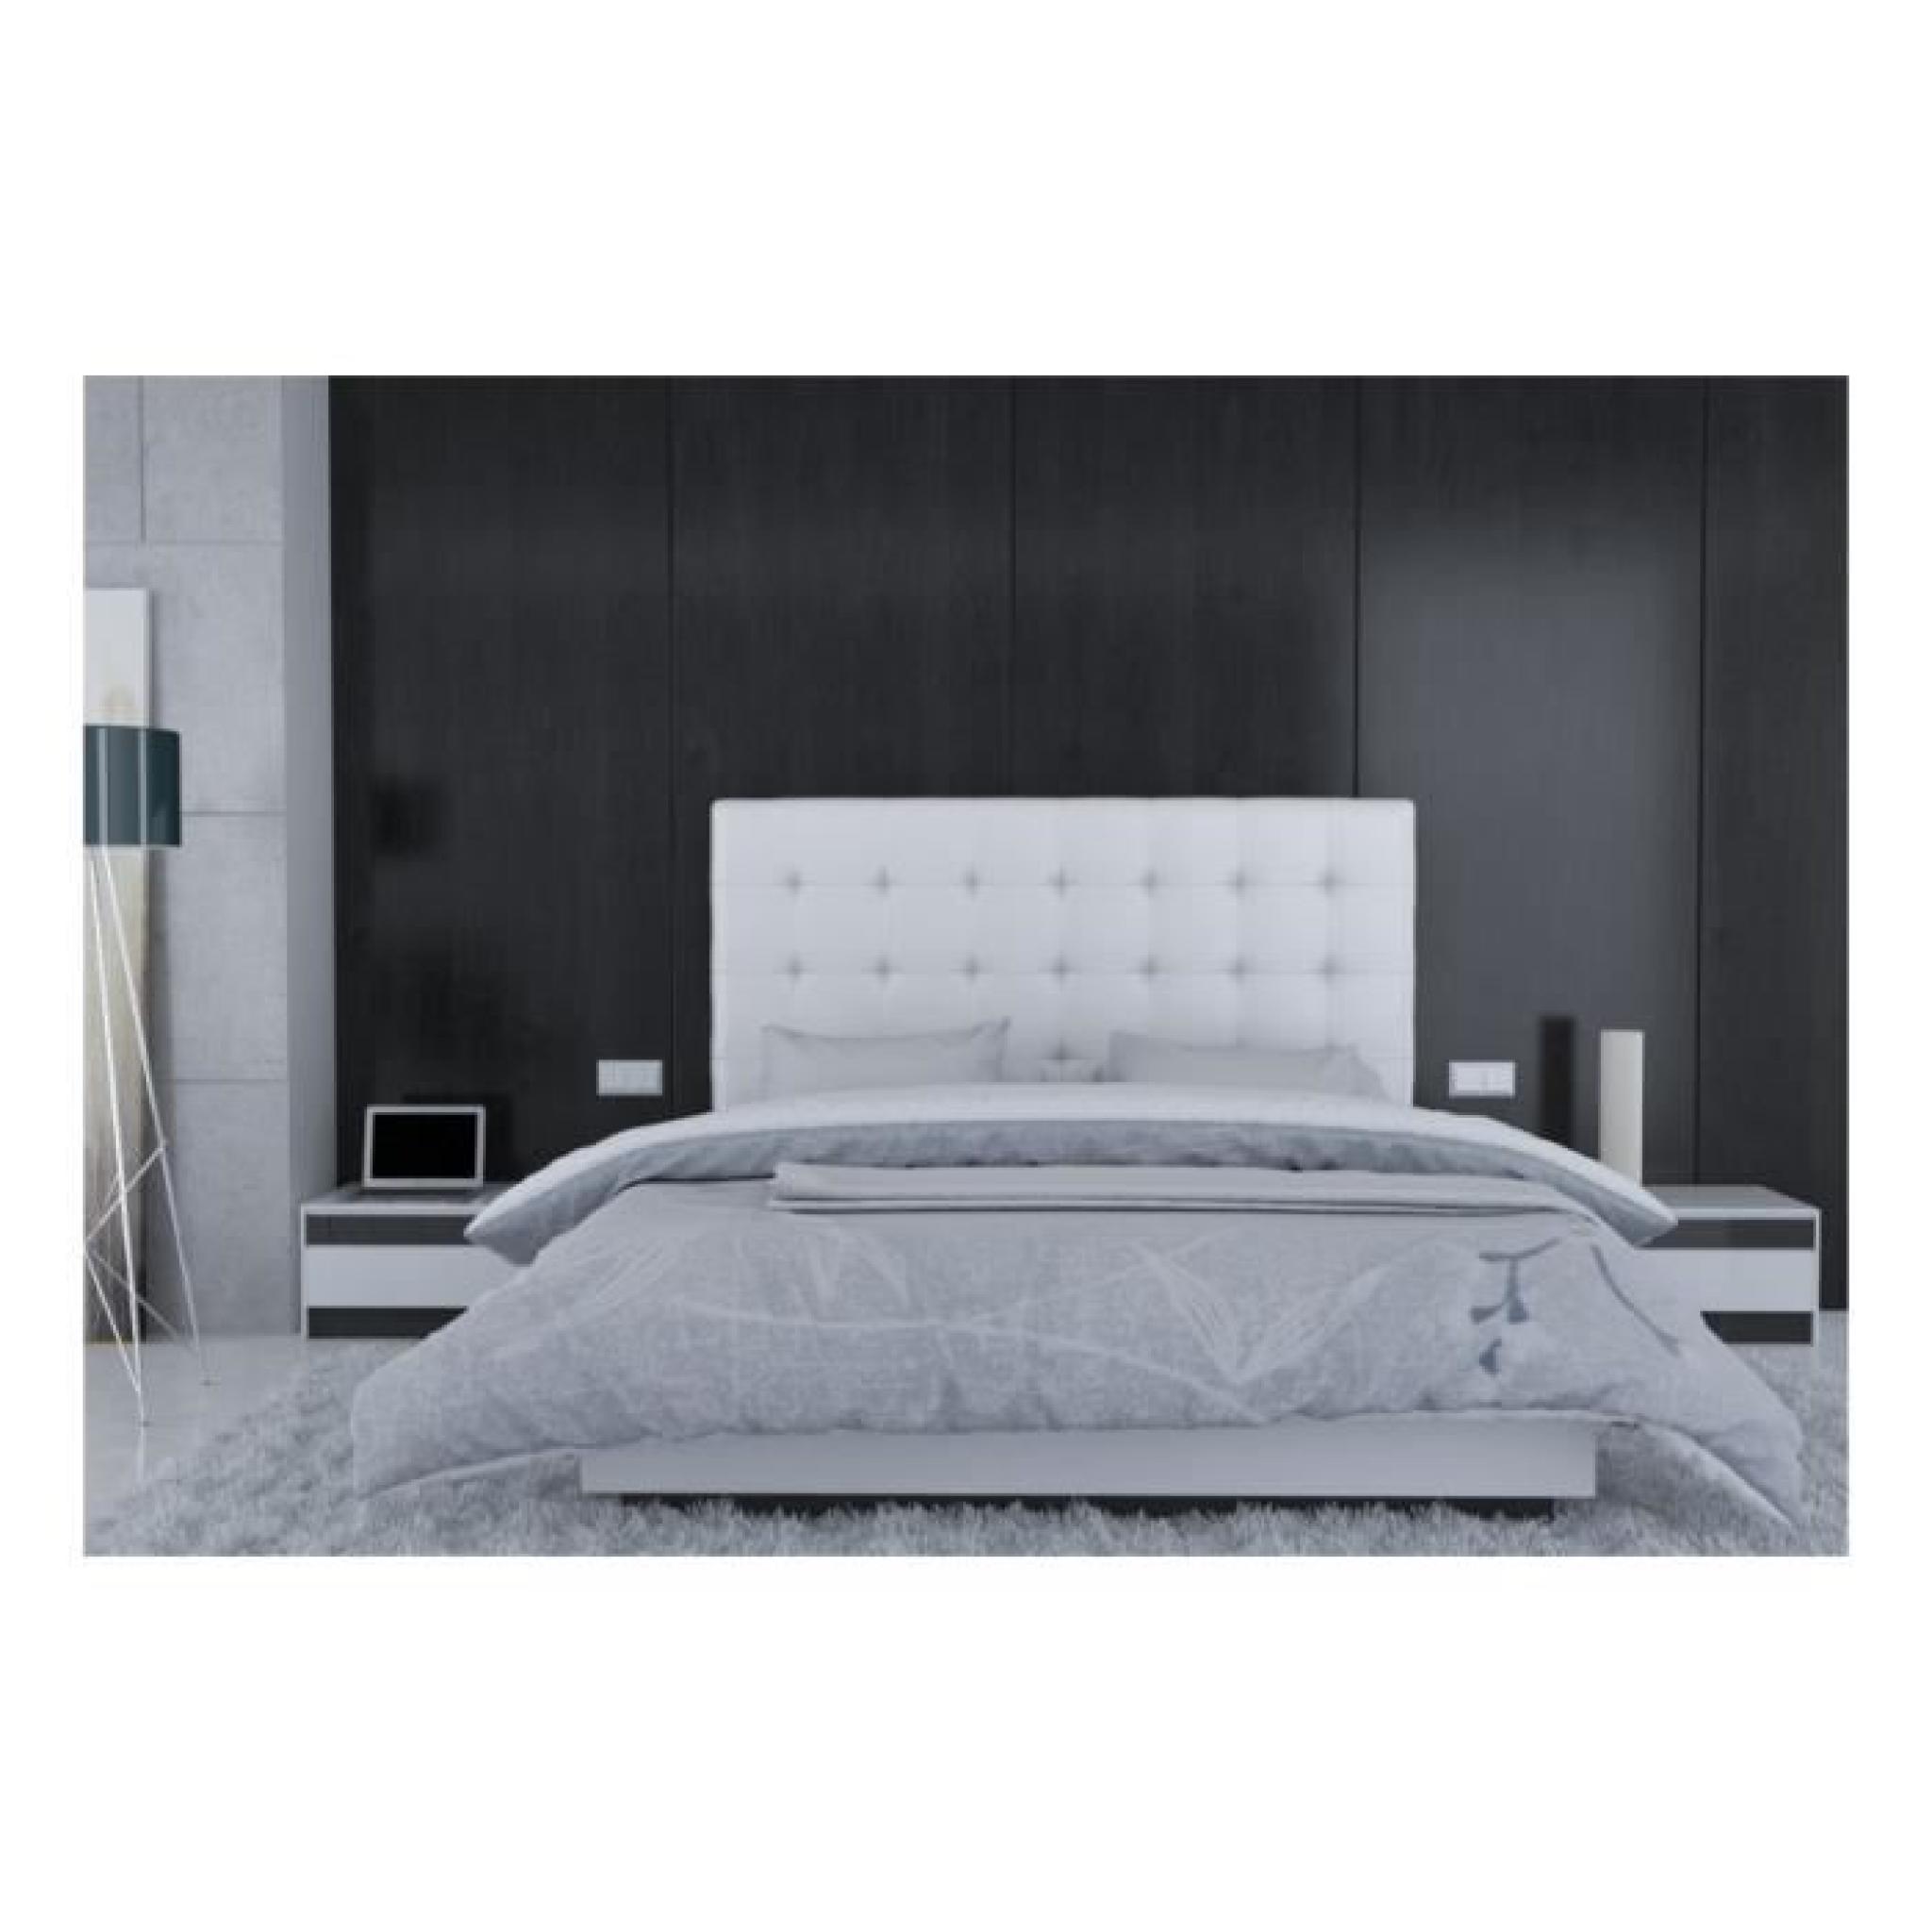 Tête de lit en PU Blanc - Rome Taille - 160 cm pas cher